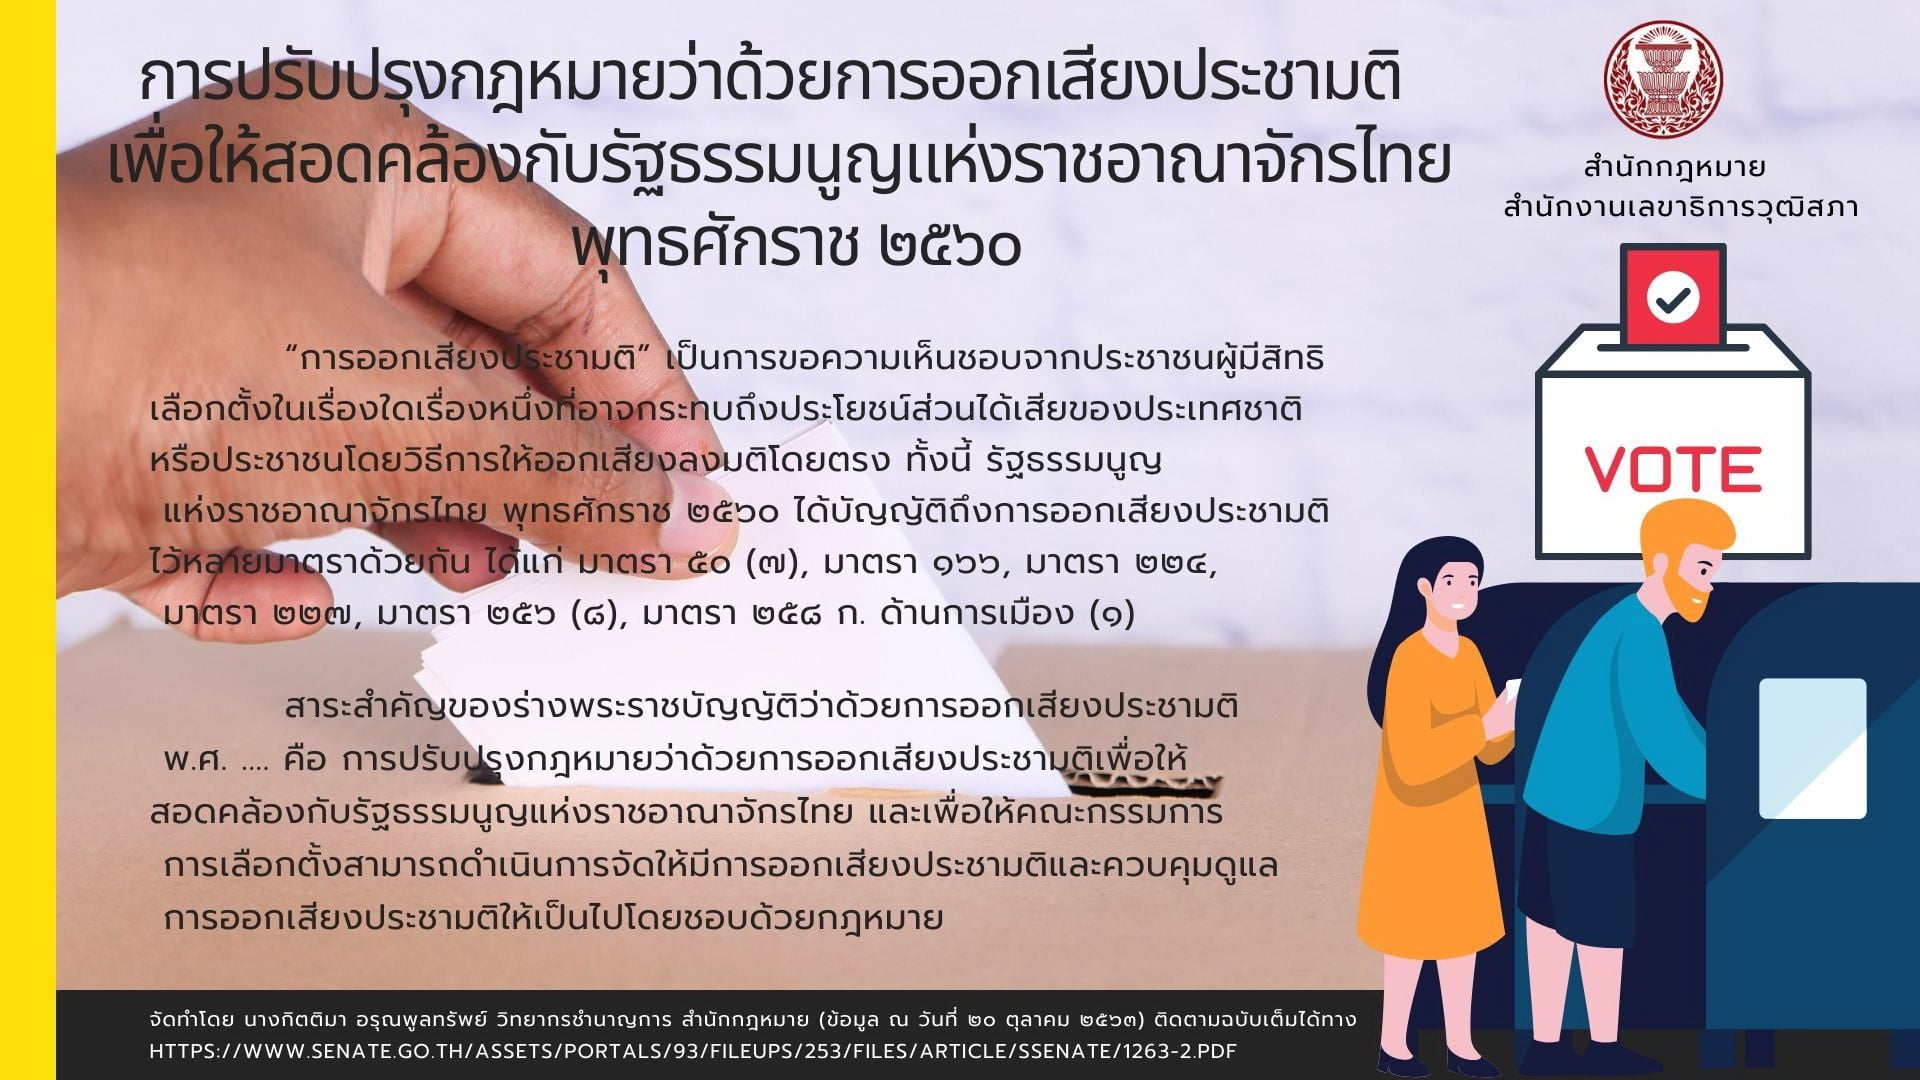 การปรับปรุงกฎหมายว่าด้วยการออกเสียงประชามติเพื่อให้สอดคล้องกับรัฐธรรมนูญแห่งราชอาณาจักรไทย พุทธศักราช 2560